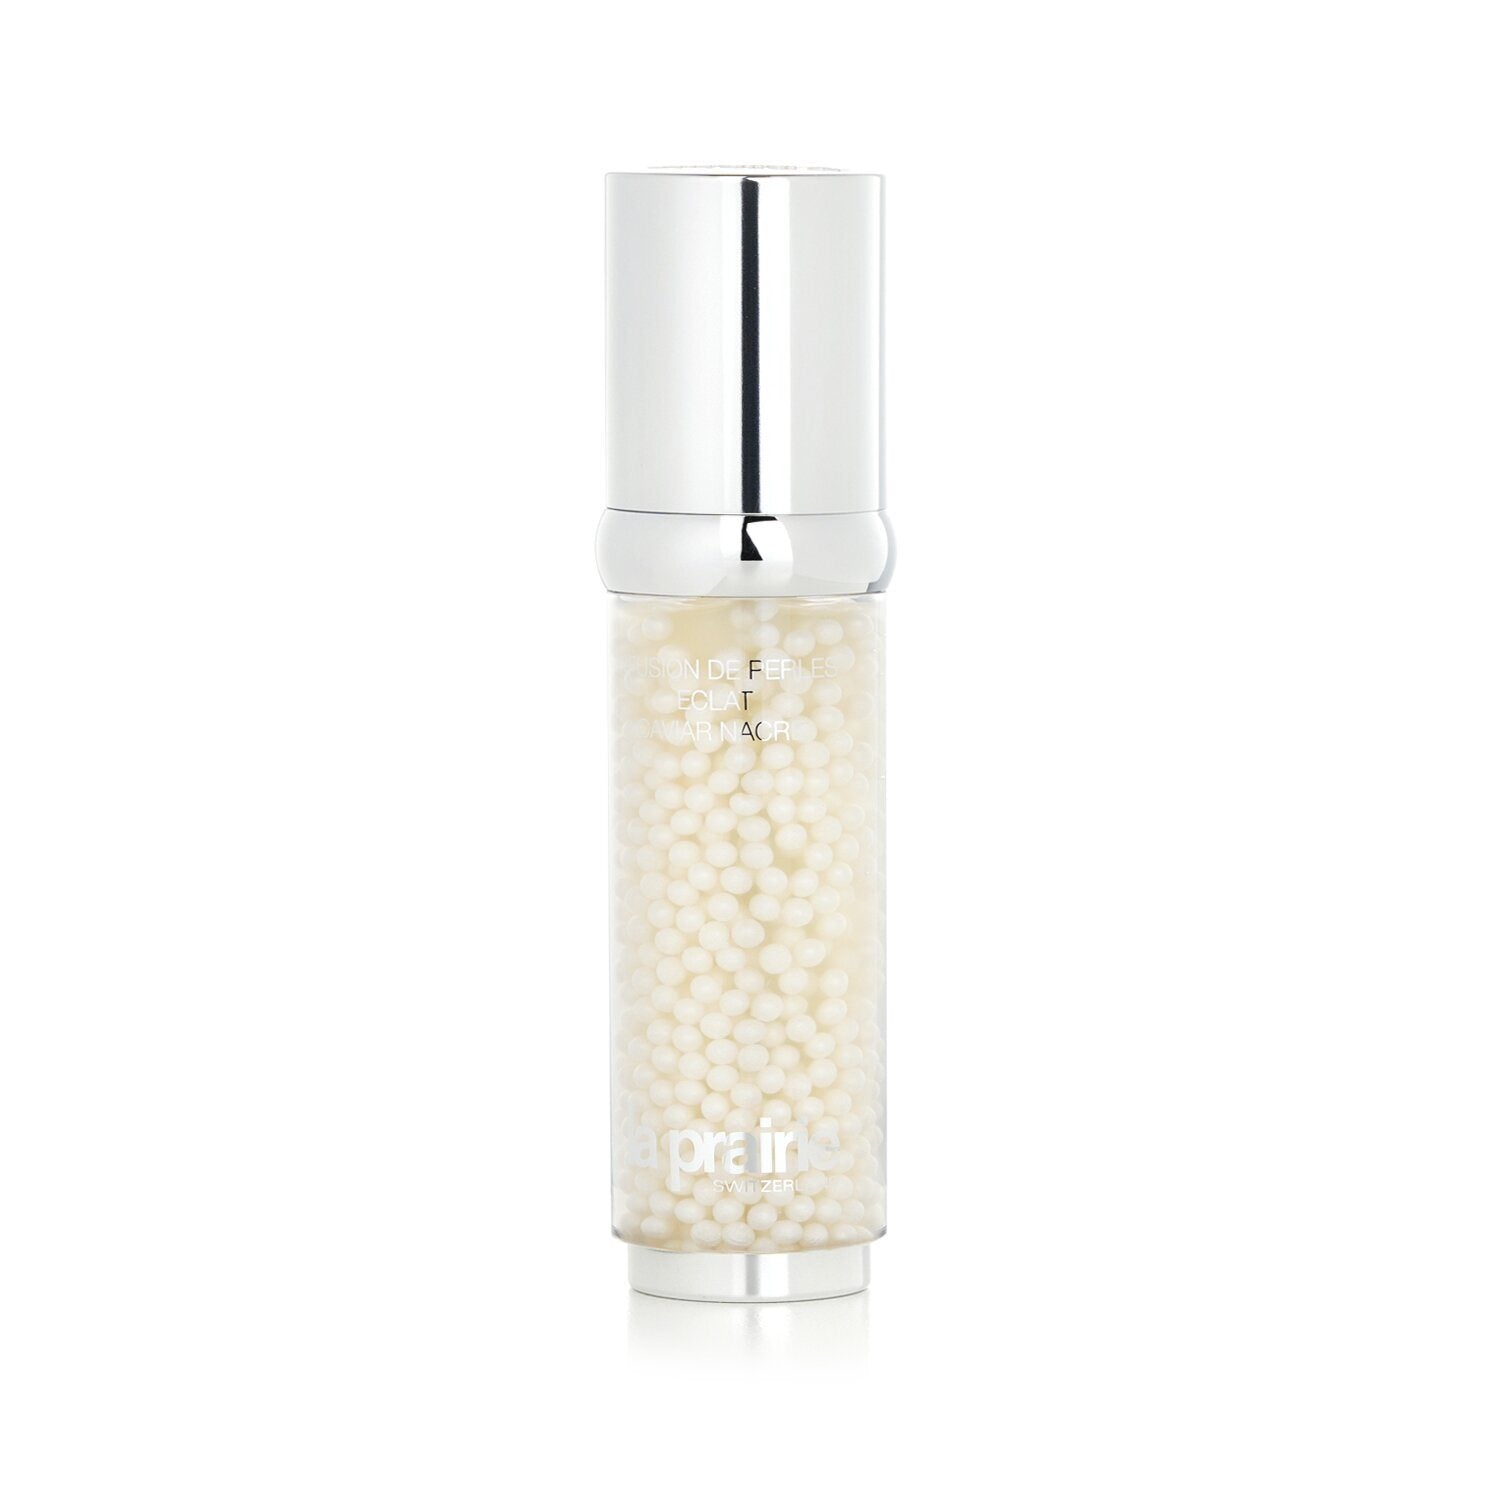 LA PRAIRIE - White Caviar Illuminating Pearl Infusion - 30ml/1oz 3P's Inclusive Beauty